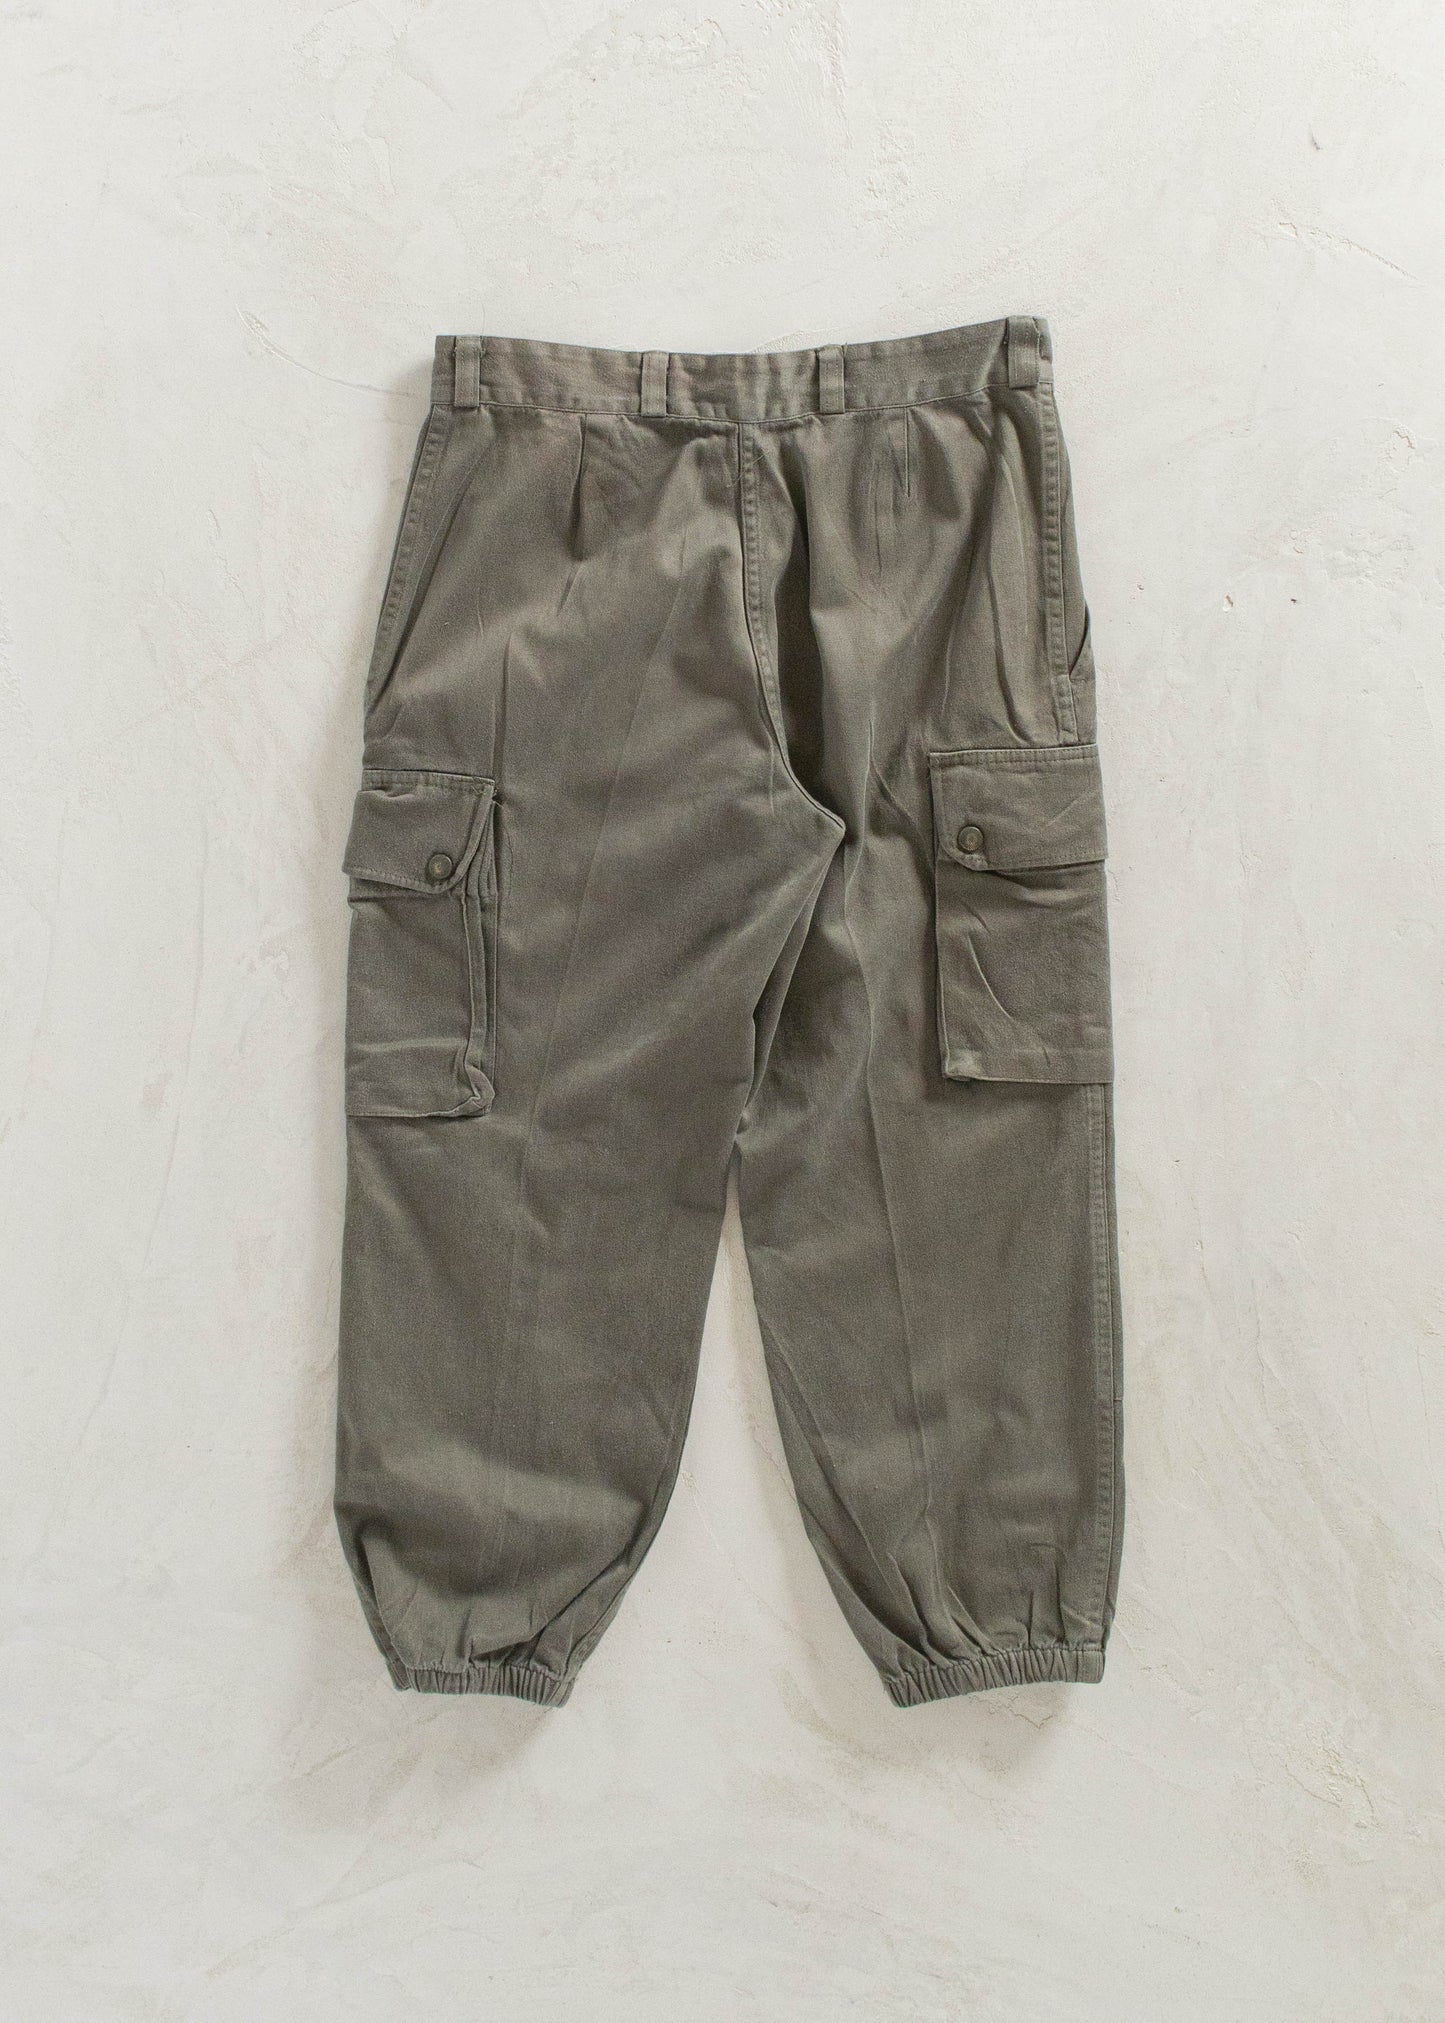 Vintage 1980s Paul Boyé French Military Cargo Pants Size Women's 28 Men's 31